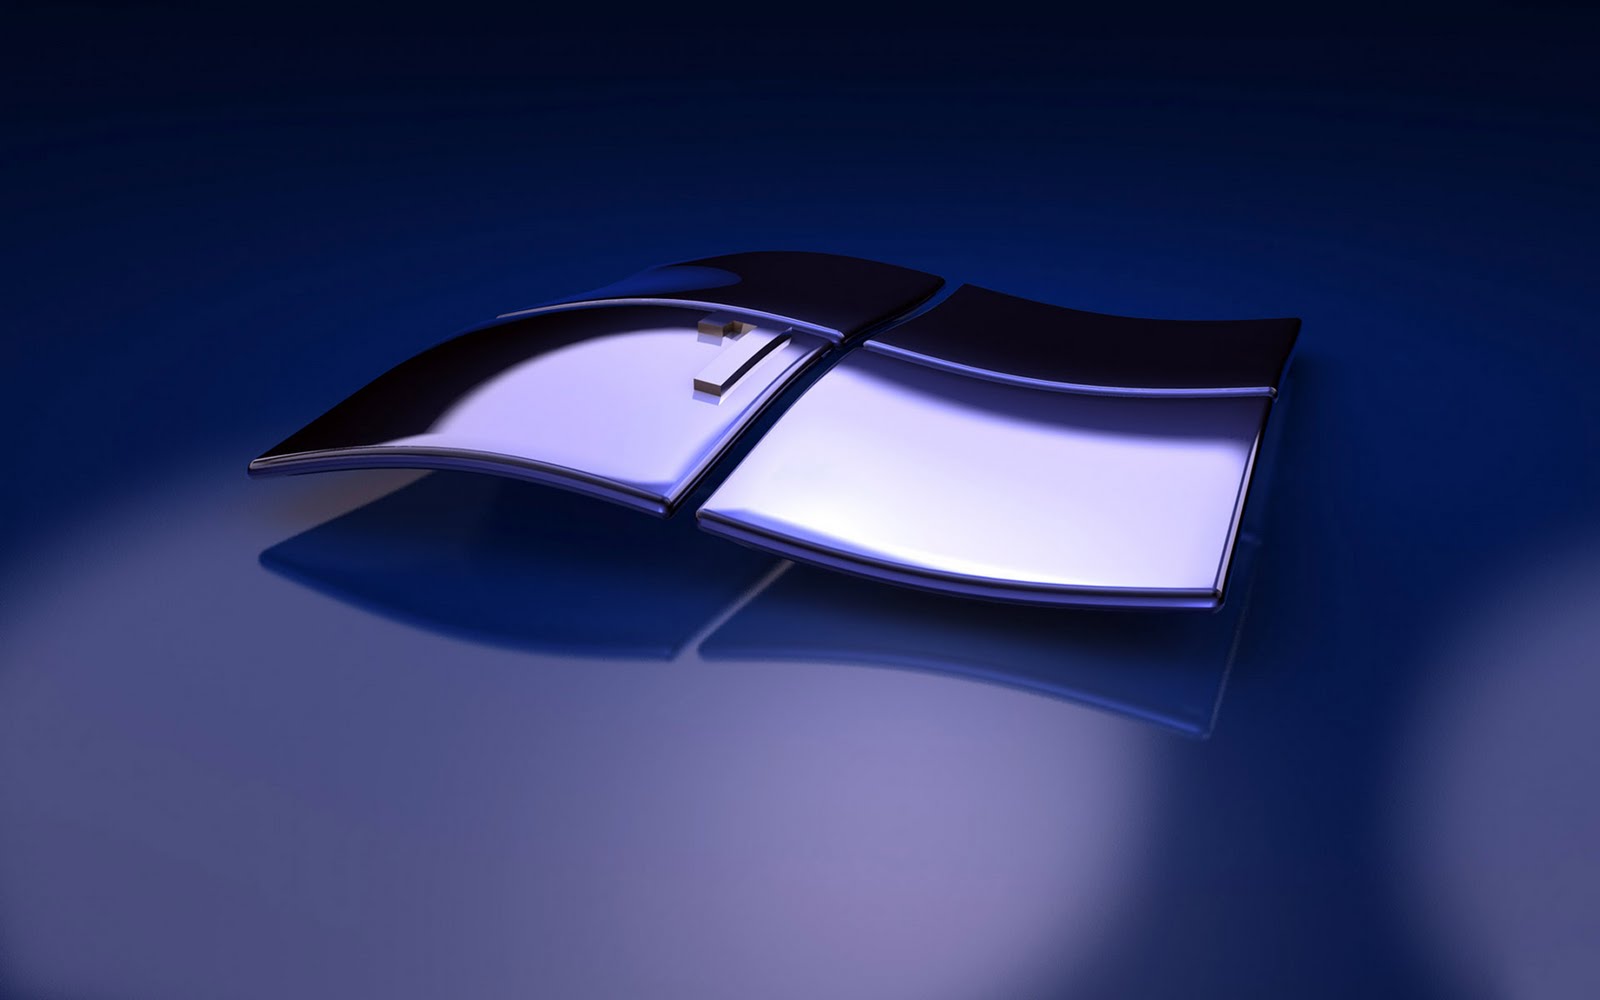 windows 3d wallpaper,blue,automotive design,technology,mouse,vehicle